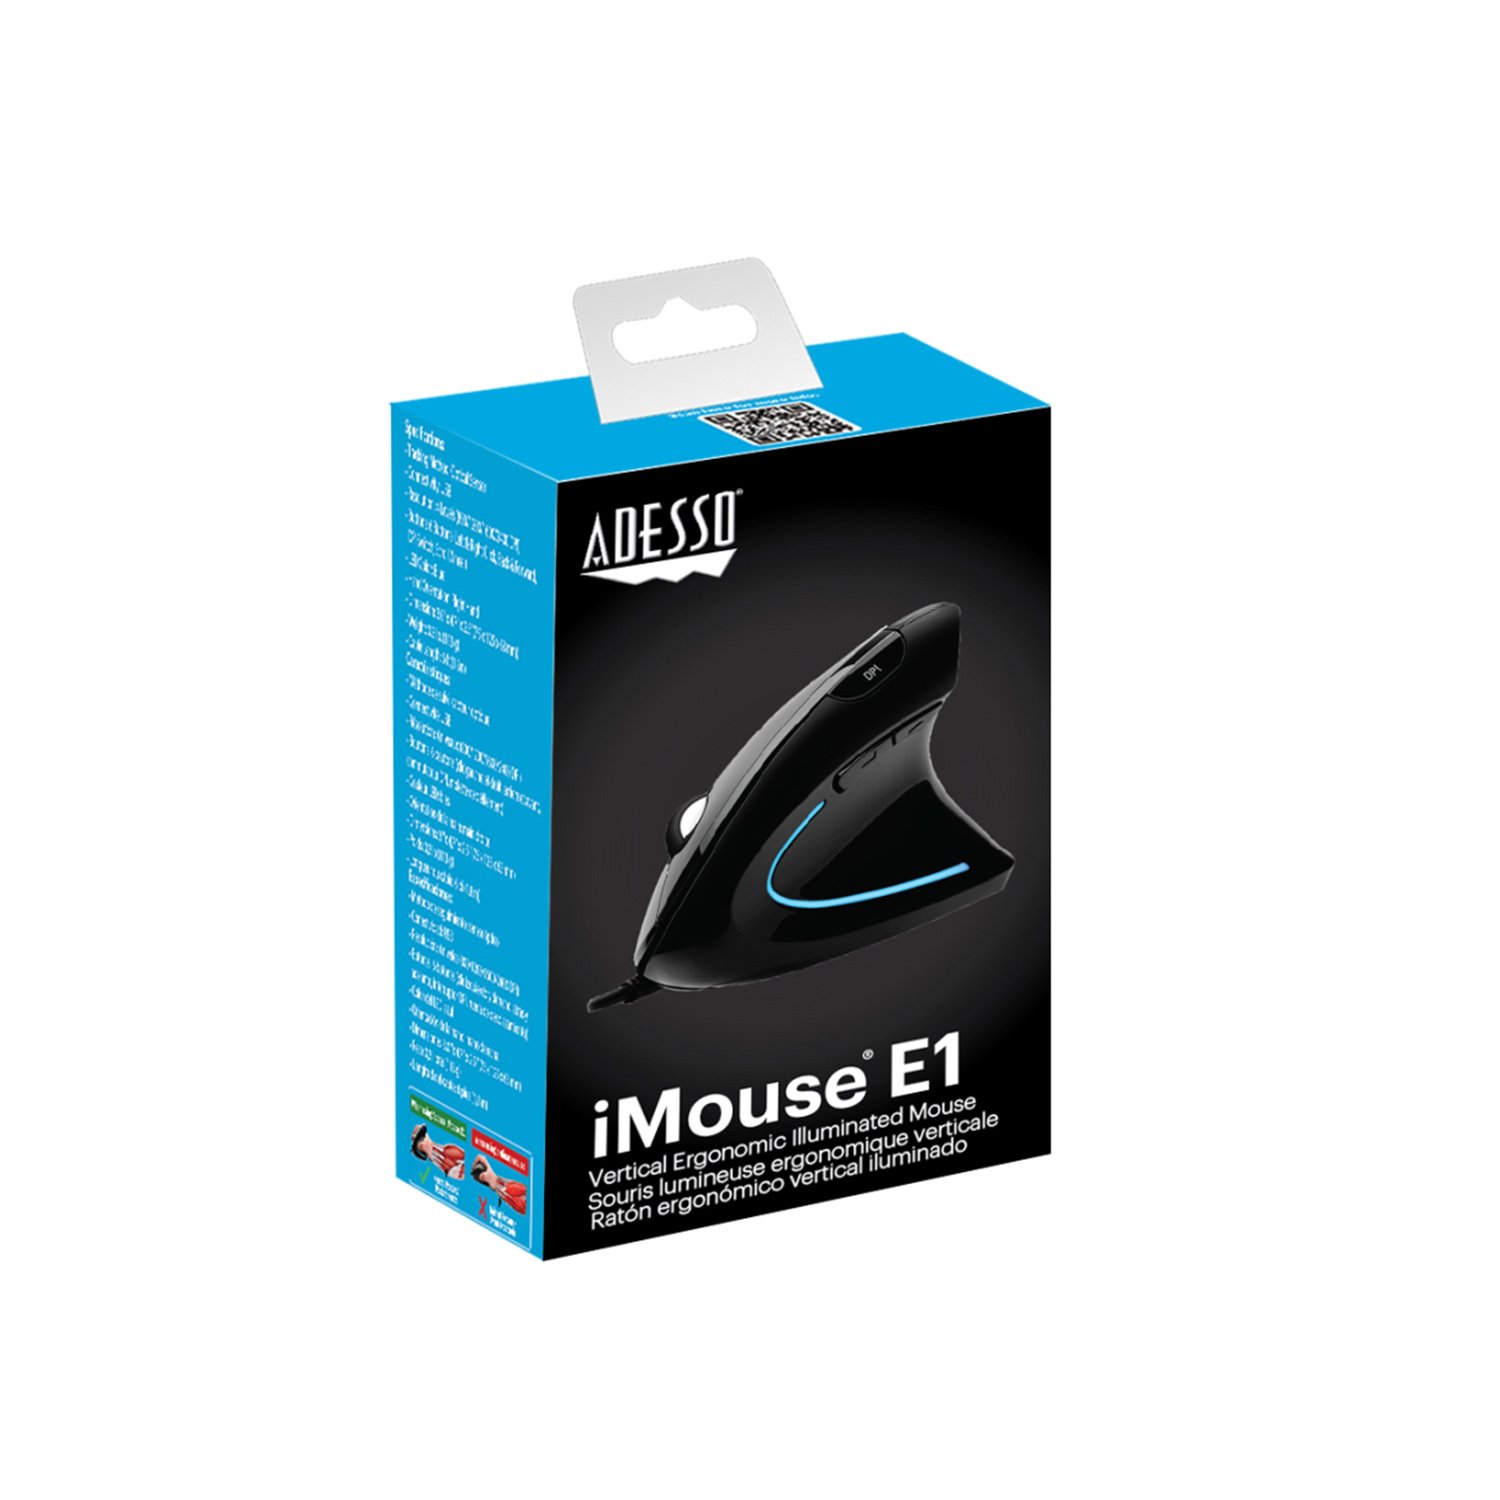 Adesso iMouse E1 Vertical Ergonomic Illuminated Mouse